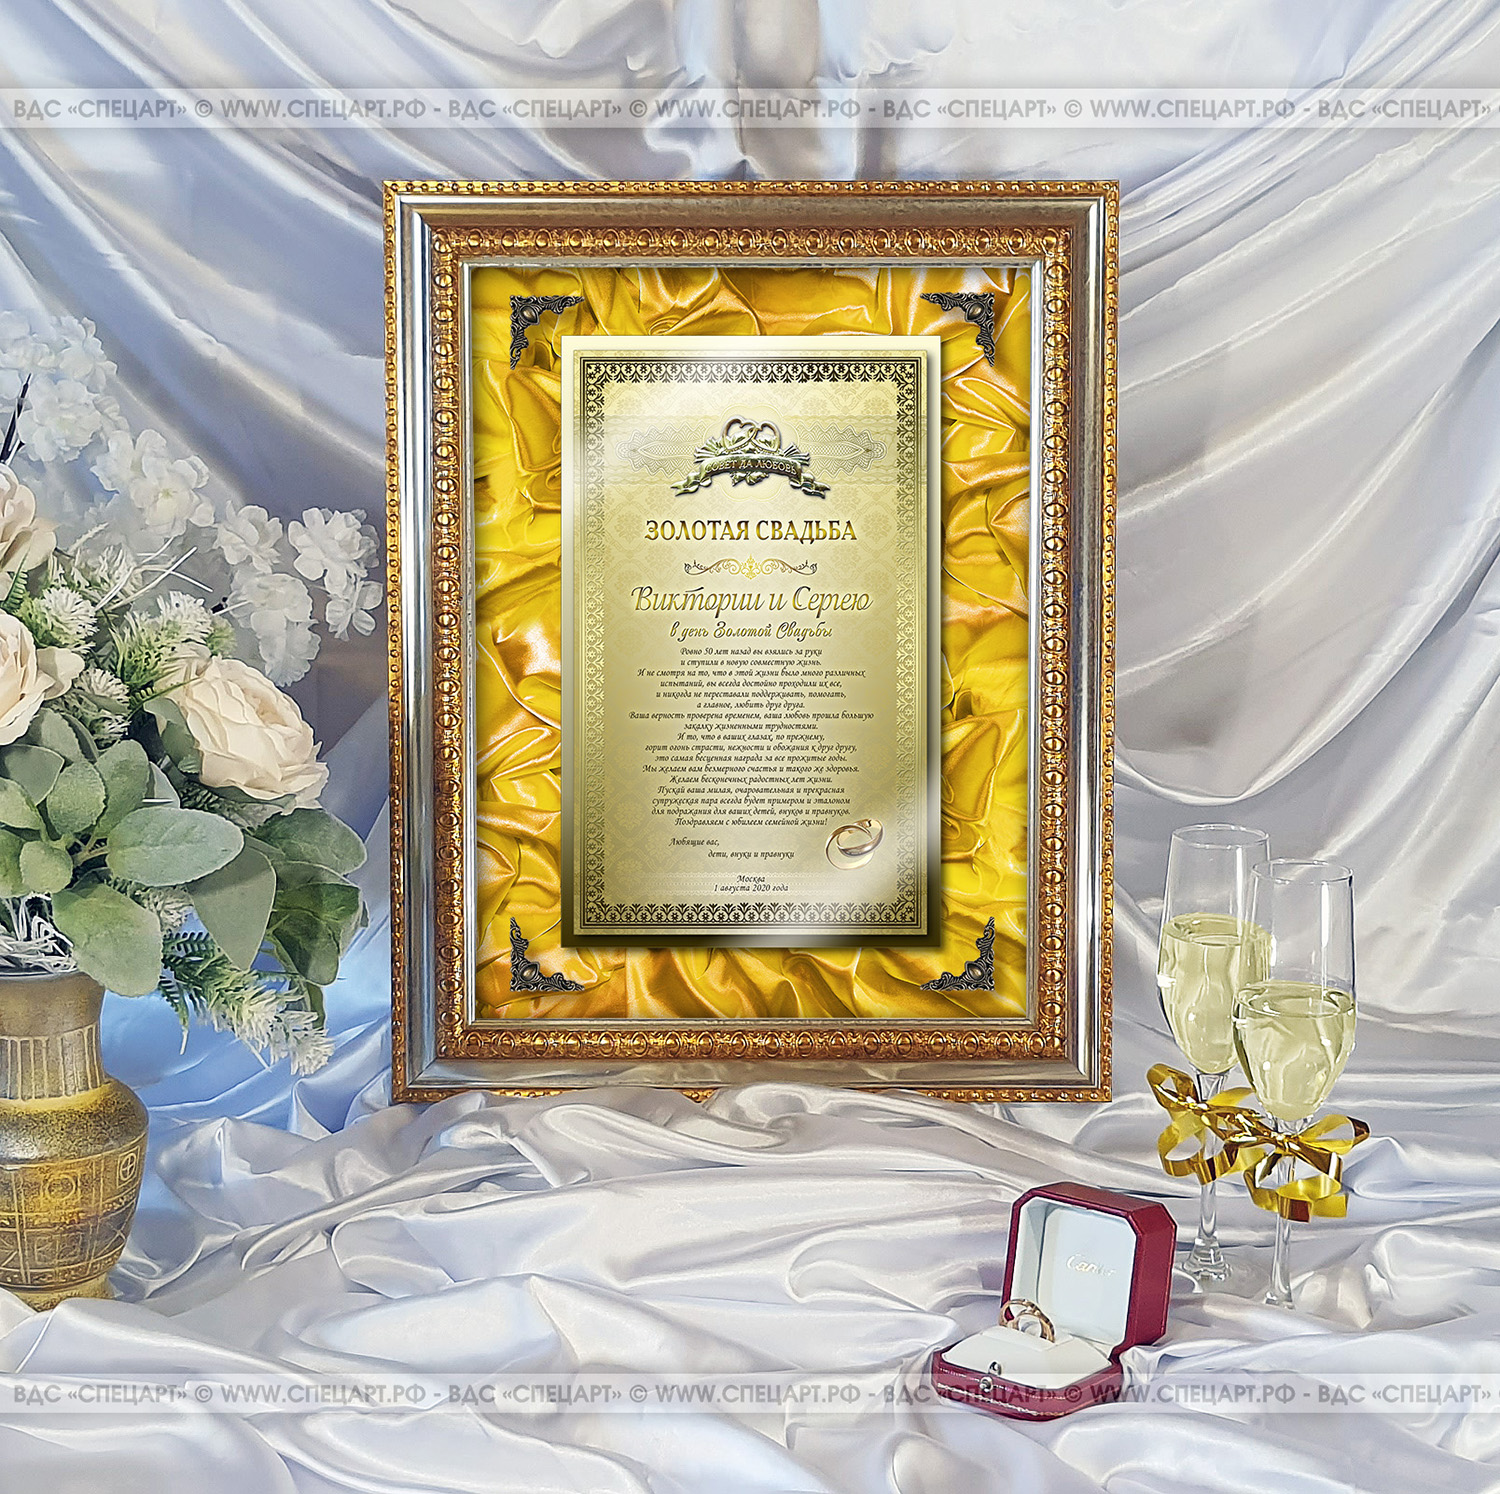 Представительское поздравление на годовщину свадьбы (золотая свадьба) на металлической табличке с цветной печатью, объемный фон из атласной ткани и позолоченными вставками на стекле и табличке в багете ...